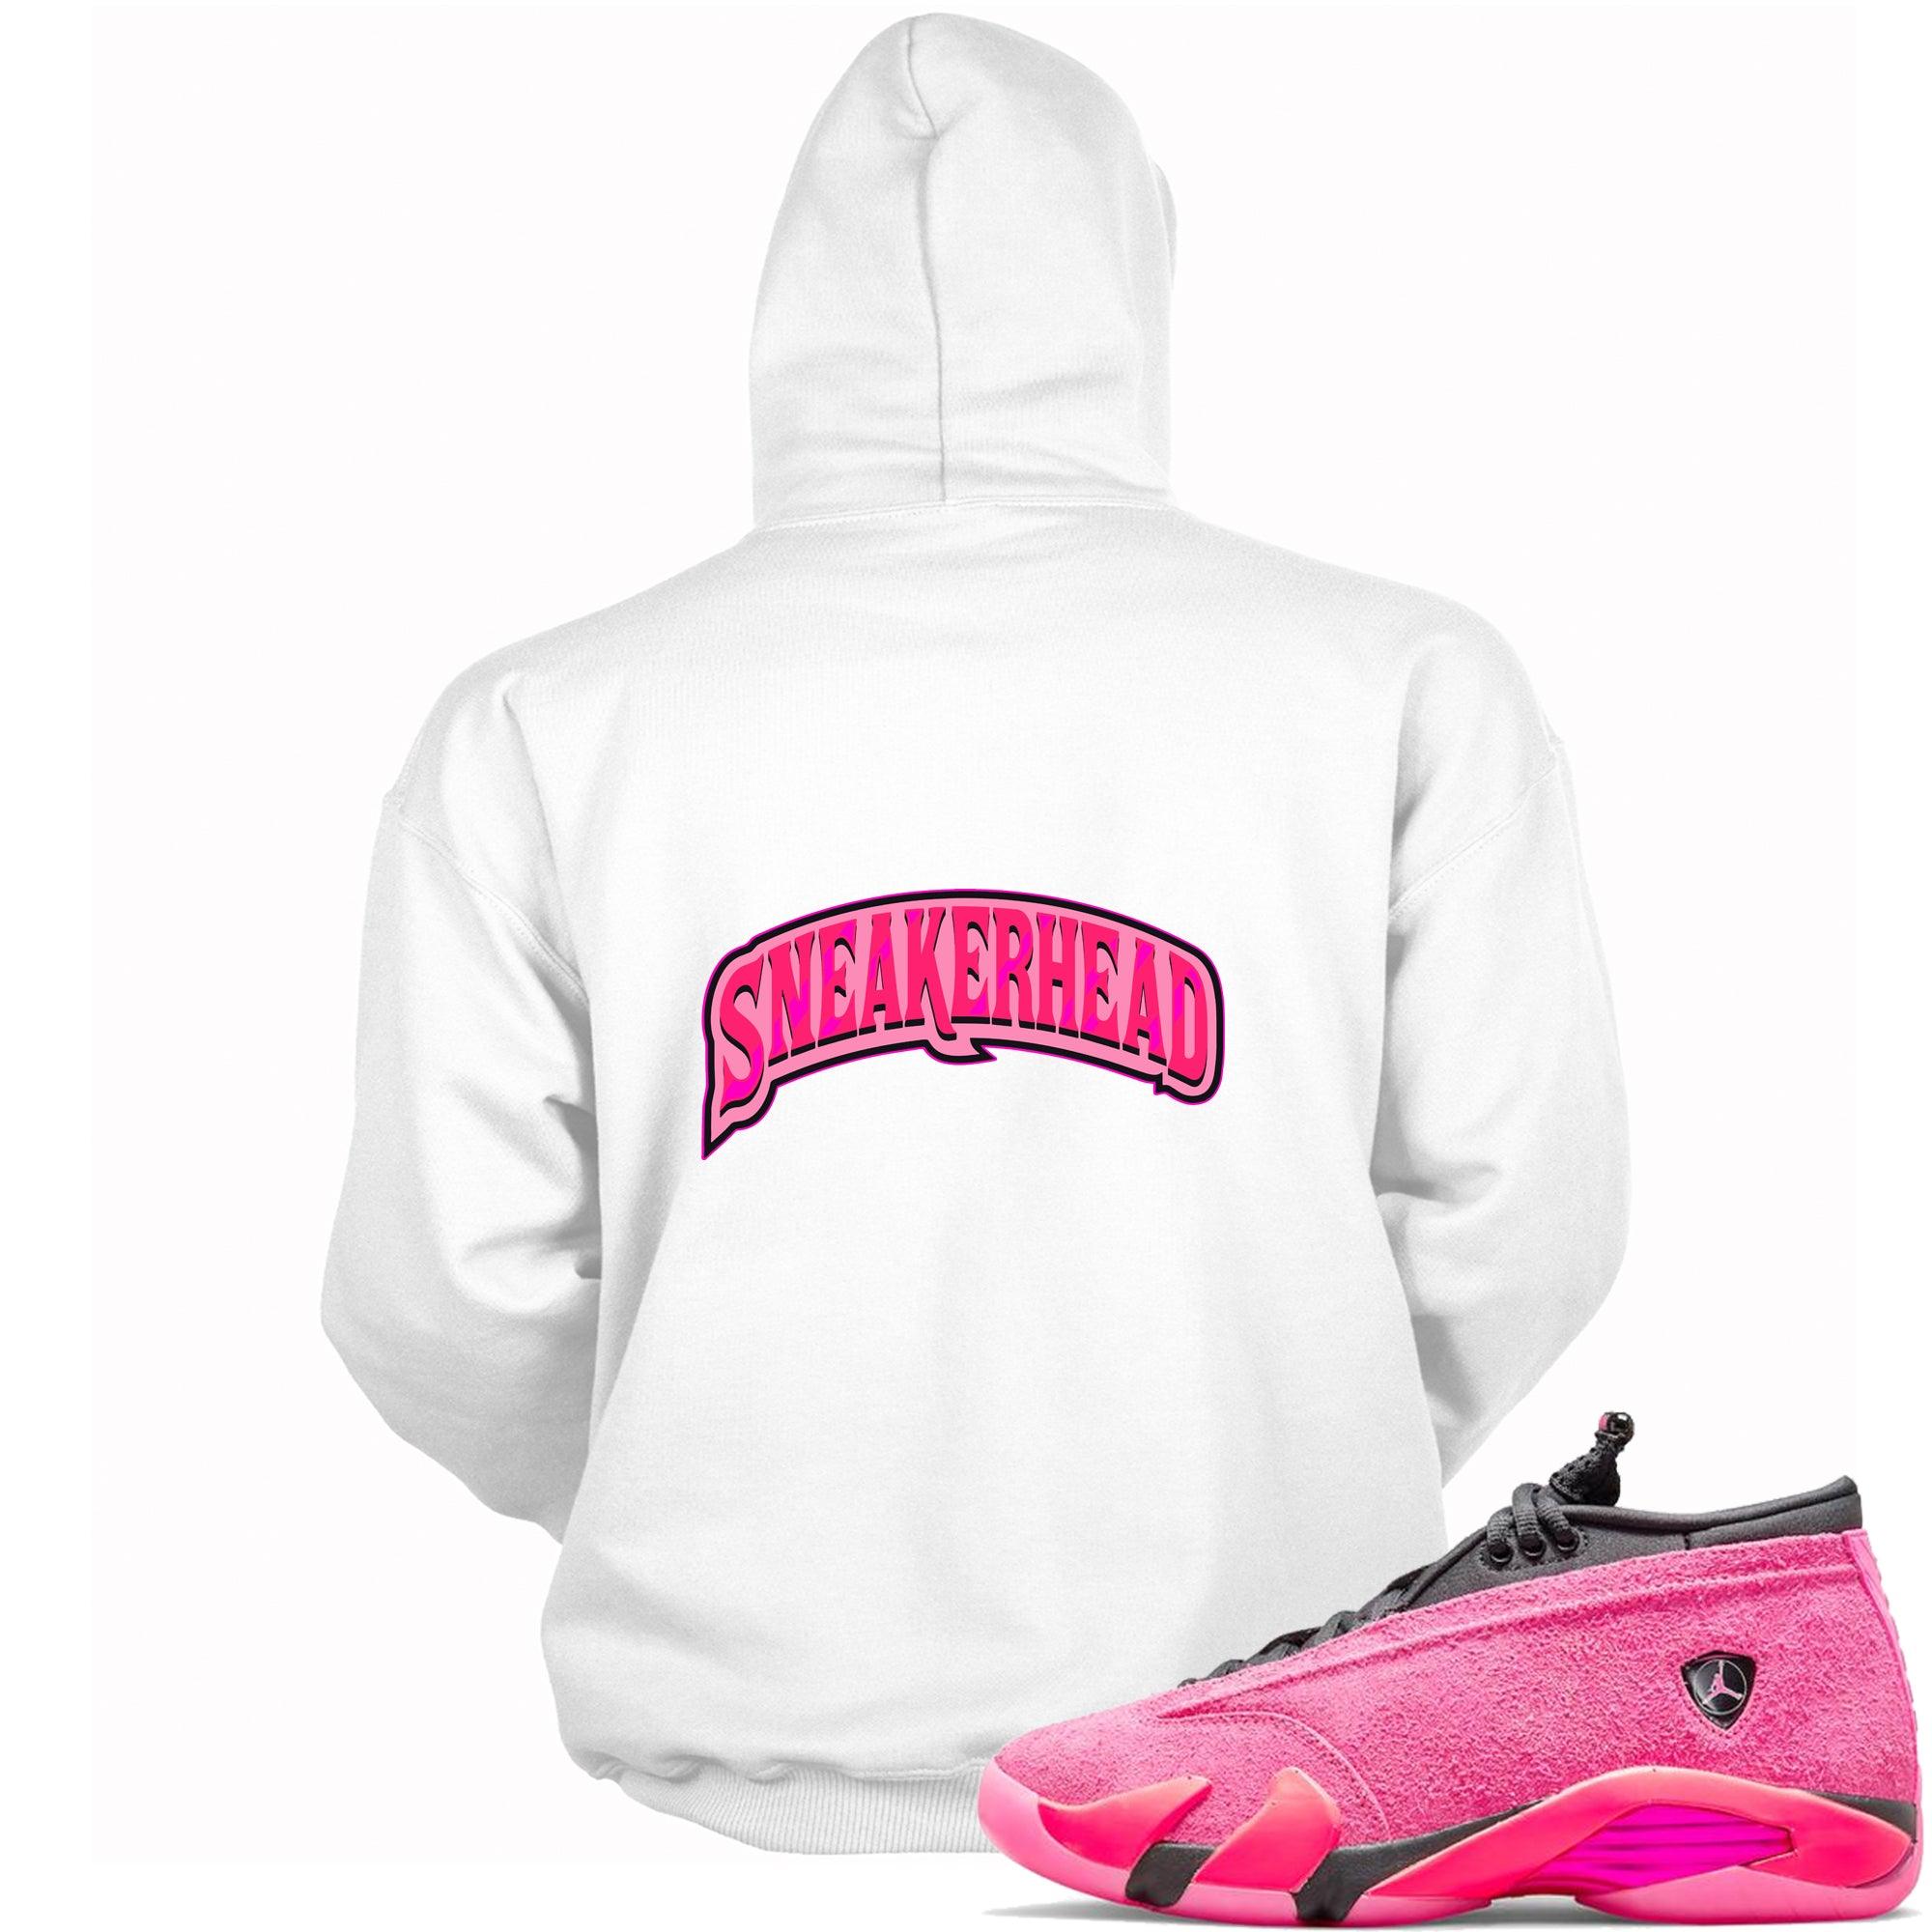 Sneakerhead Hoodie Jordan 14 Shocking Pink photo